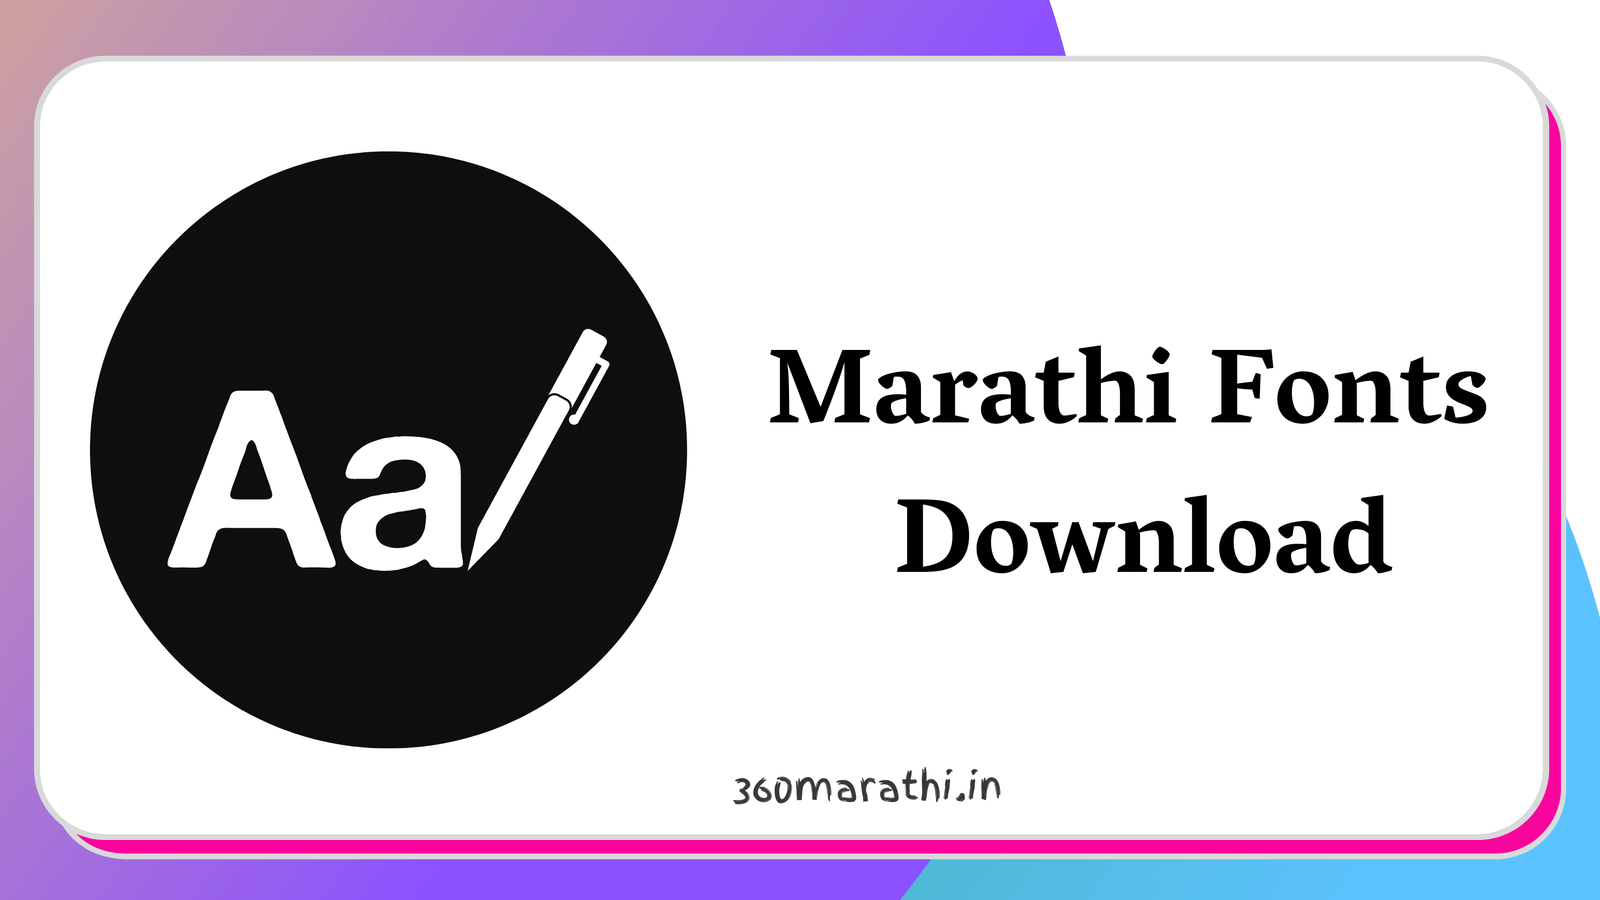 Marathi Fonts Download